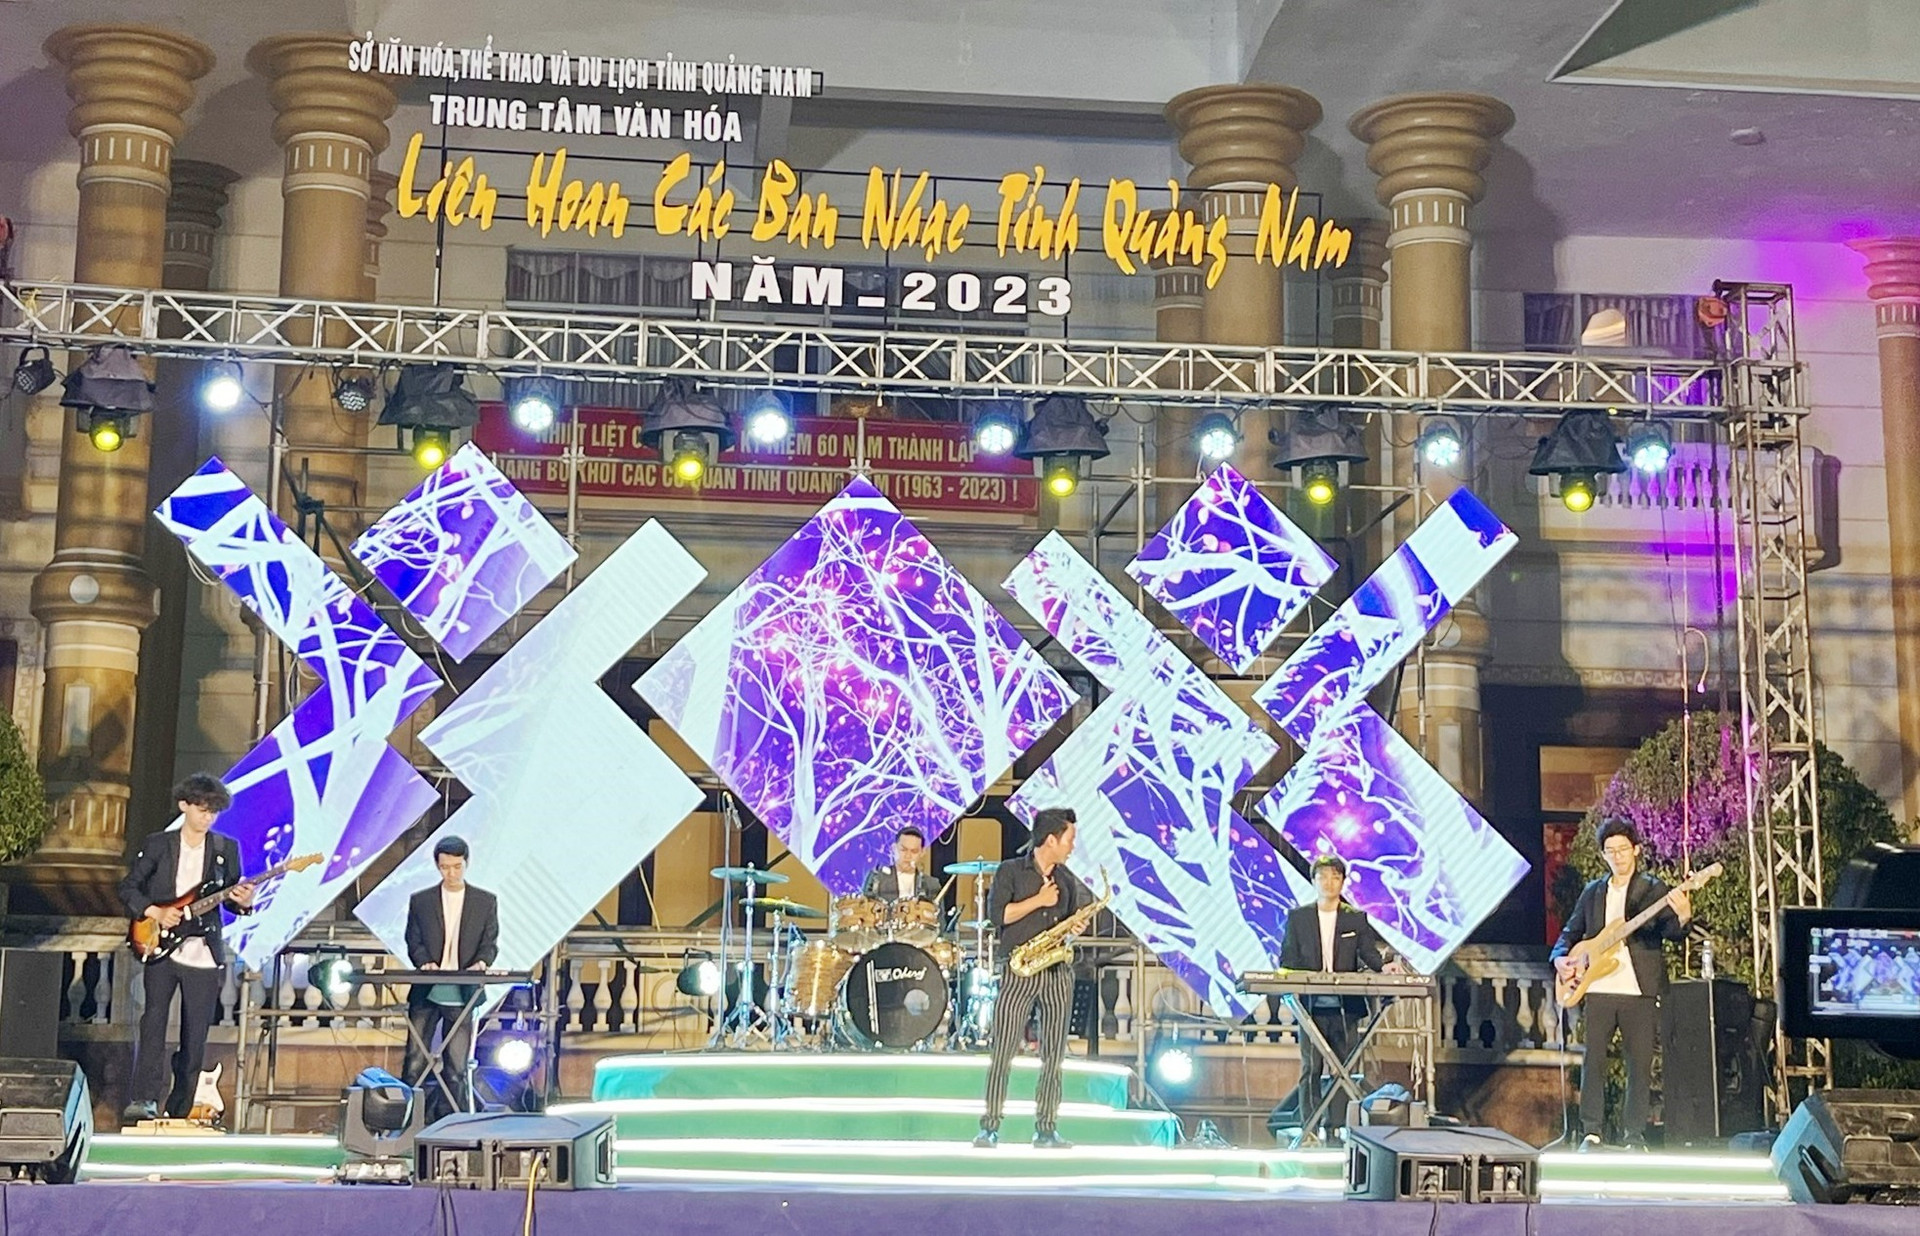 Liên hoan các ban nhạc tỉnh Quảng Nam năm 2023 thu hút 9 địa phương tham gia. Ảnh: X.H